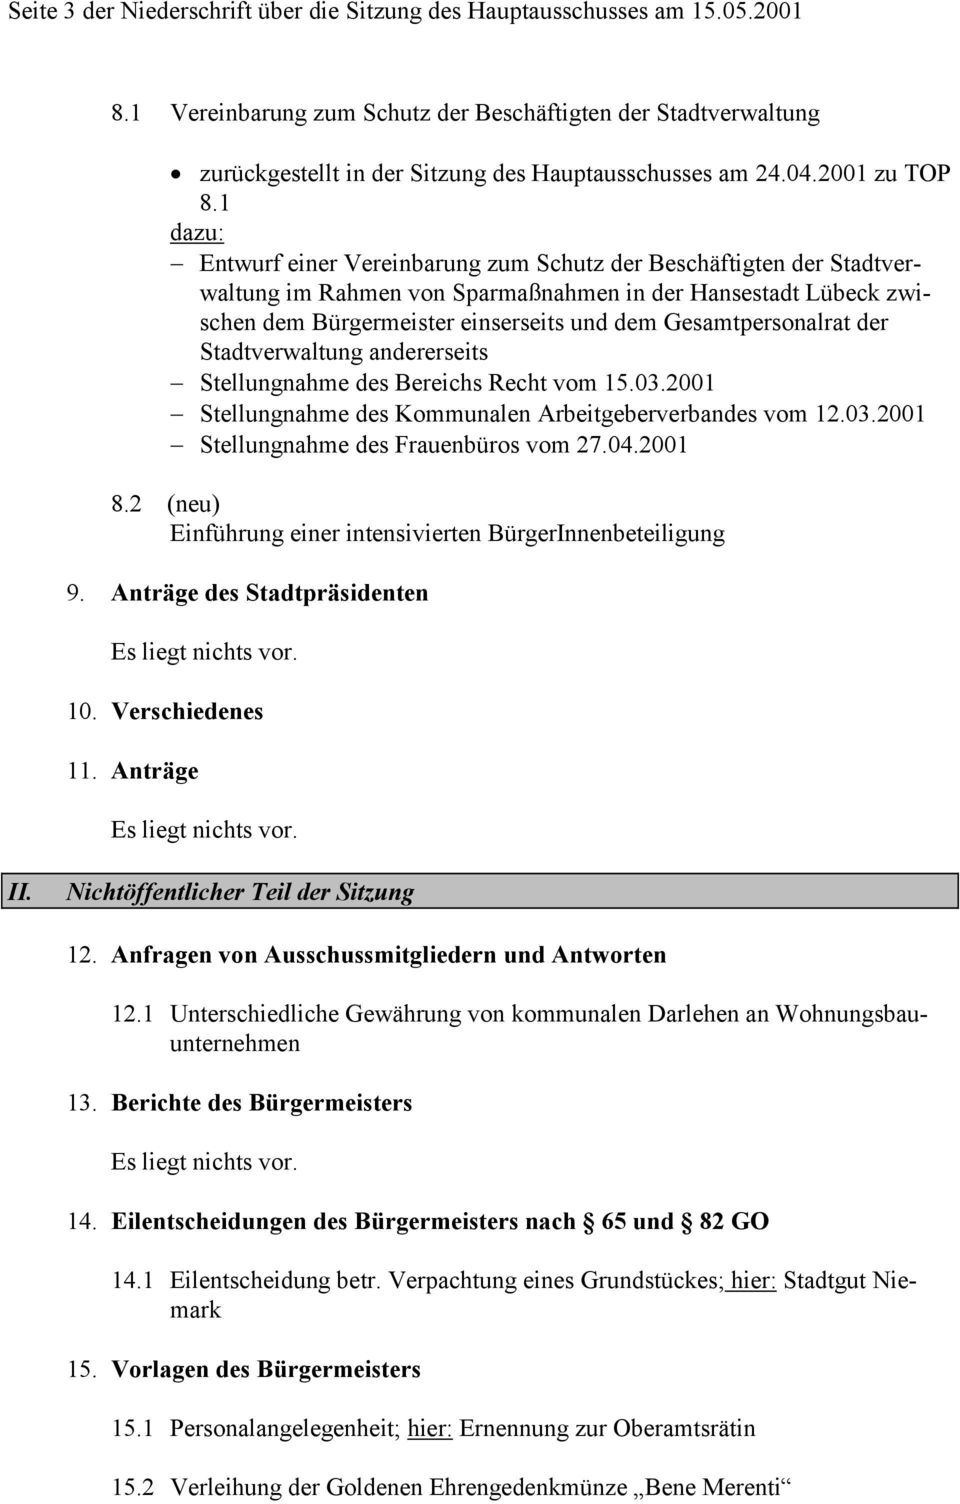 1 dazu: Entwurf einer Vereinbarung zum Schutz der Beschäftigten der Stadtverwaltung im Rahmen von Sparmaßnahmen in der Hansestadt Lübeck zwischen dem Bürgermeister einserseits und dem